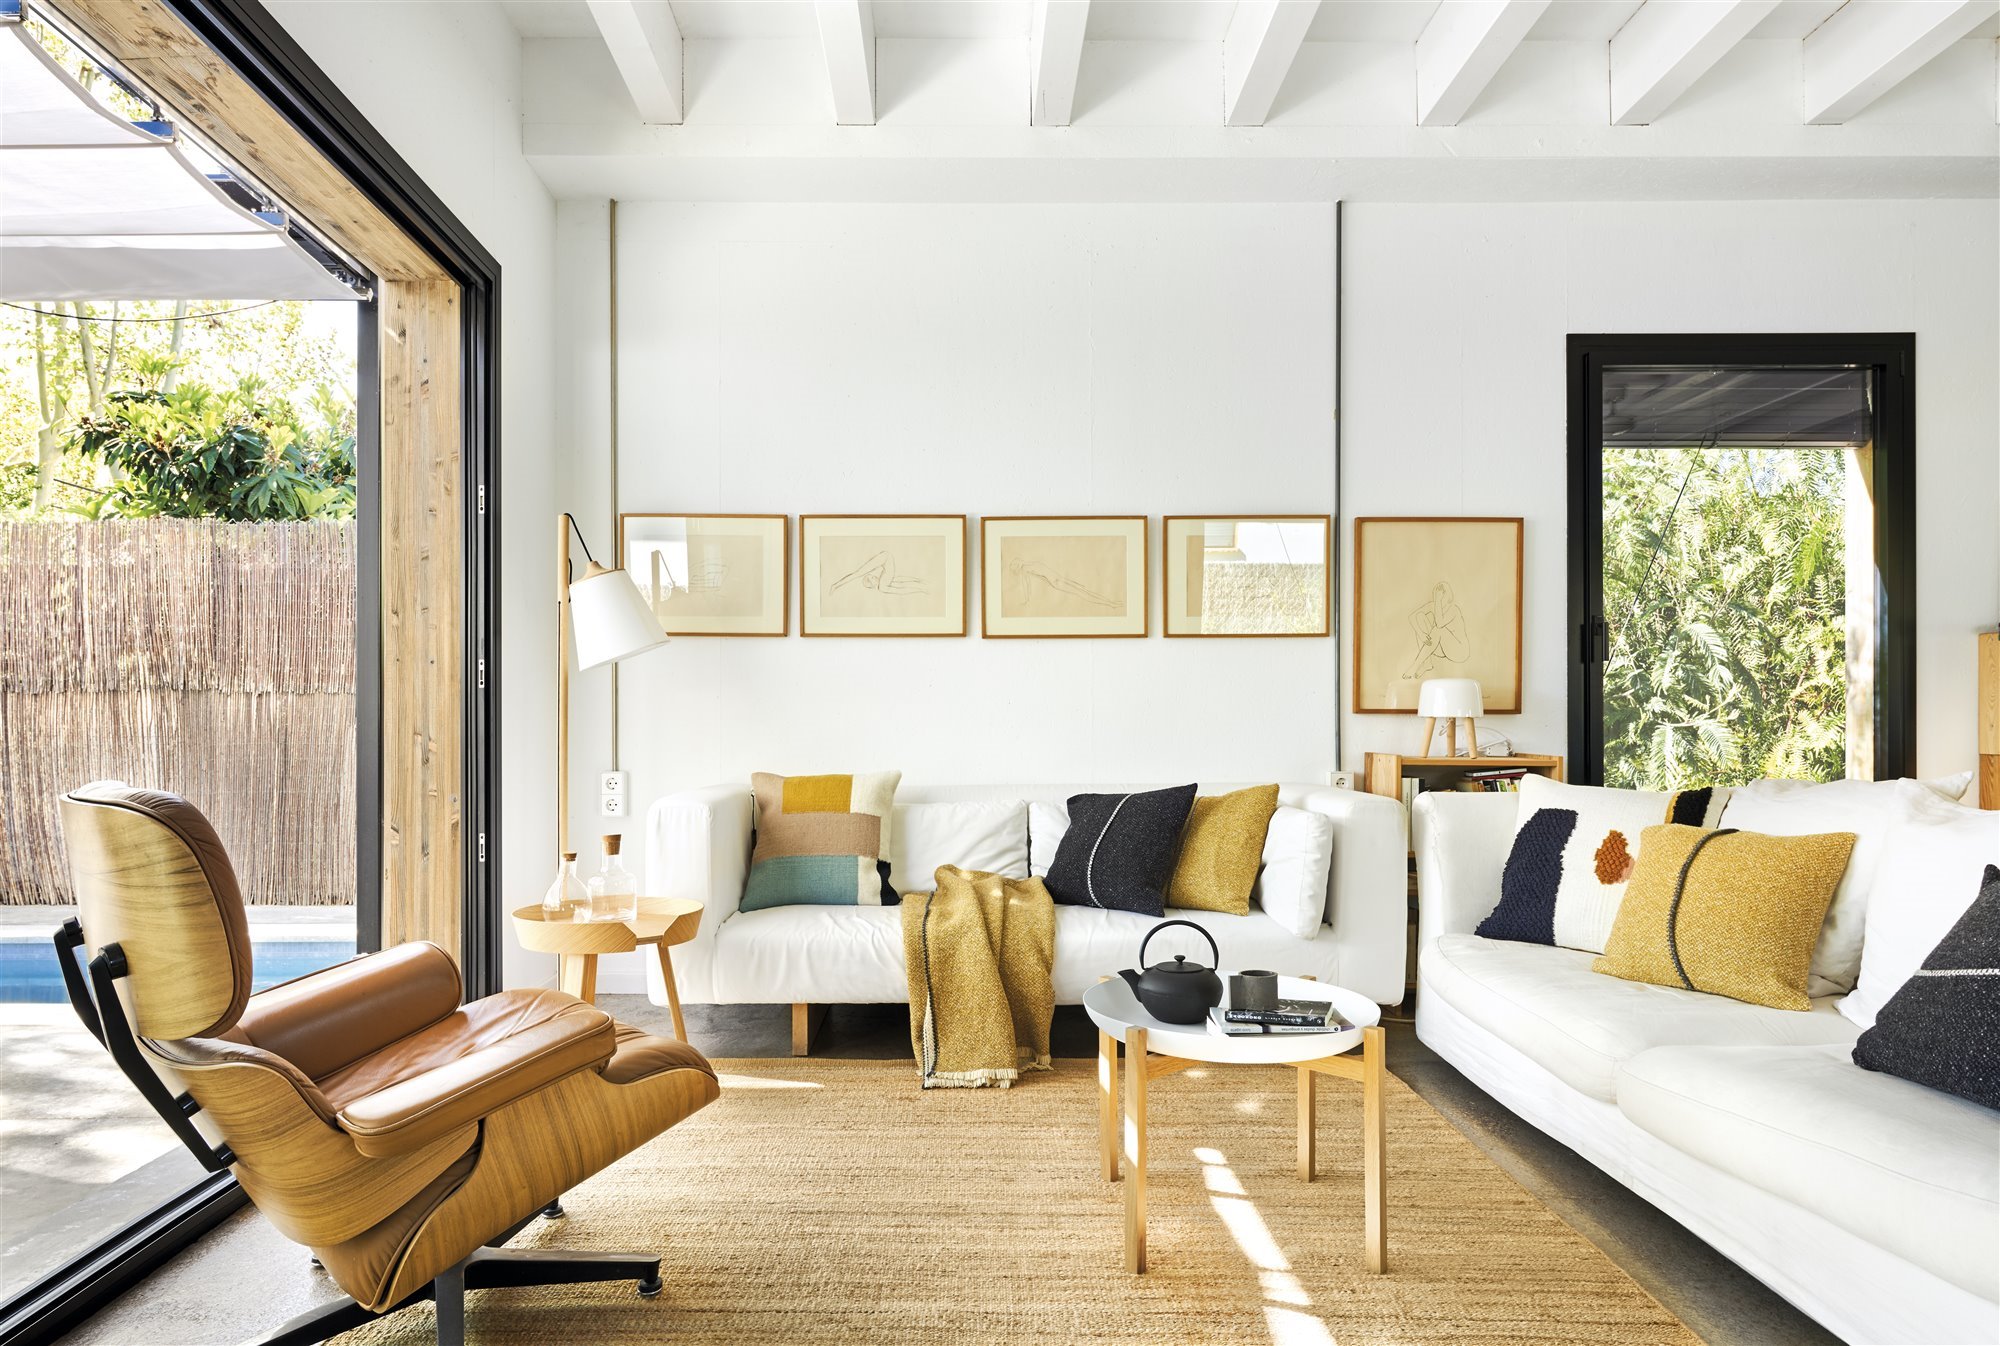 Salon de una casa moderna abierto al jardin con alfombra de fibras naturales